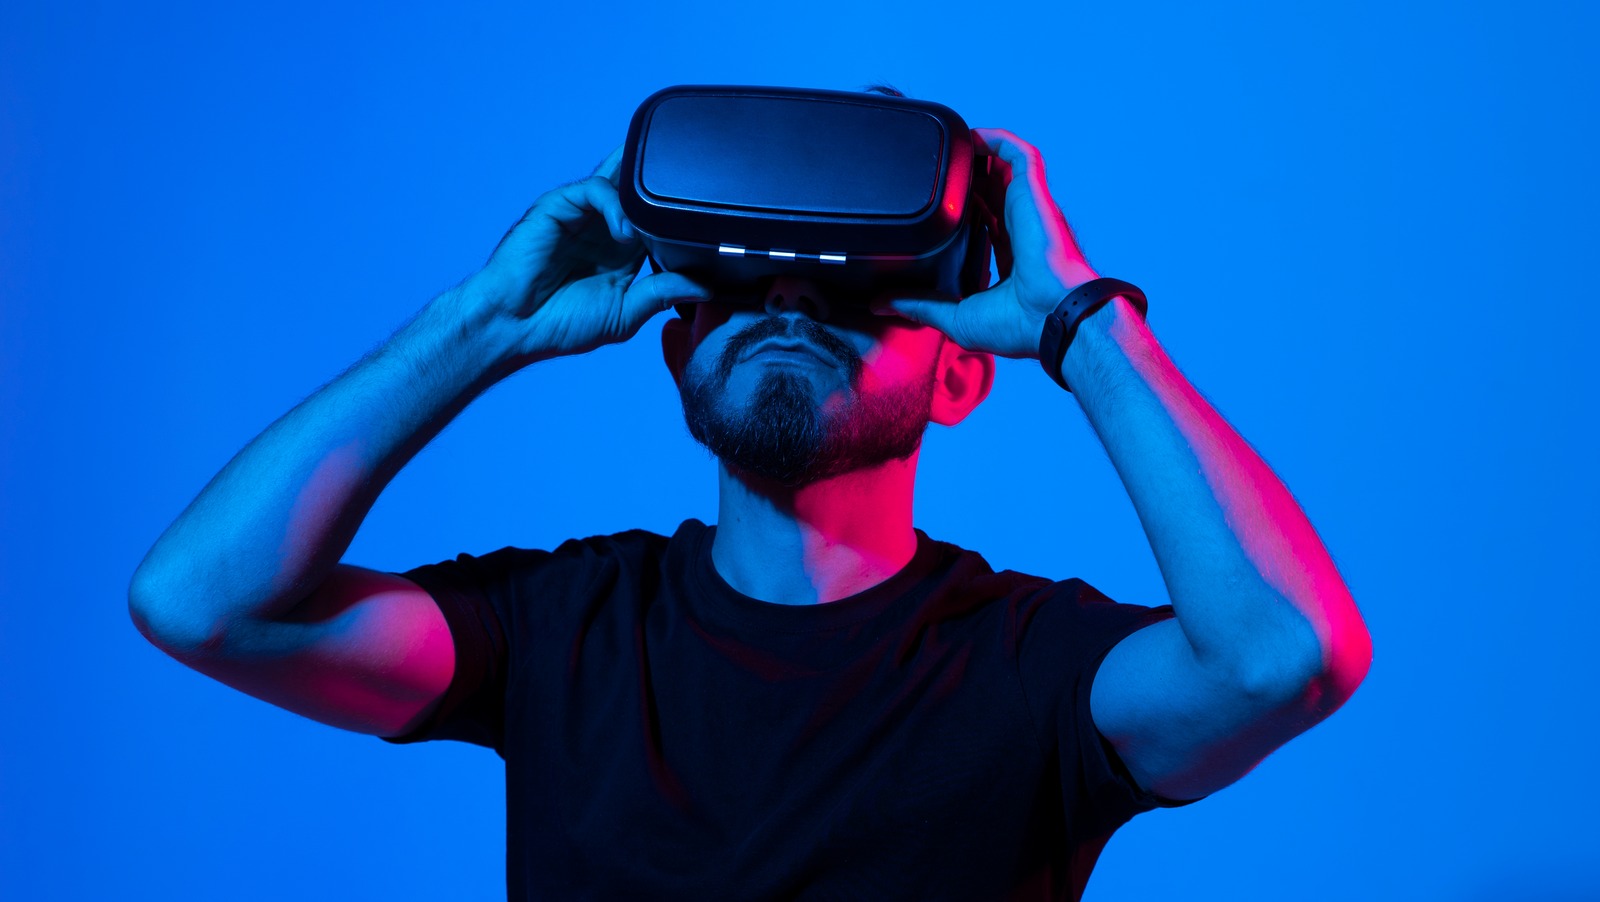 Des recherches prometteuses sur la réalité virtuelle obligent les humains à faire face à leurs phobies